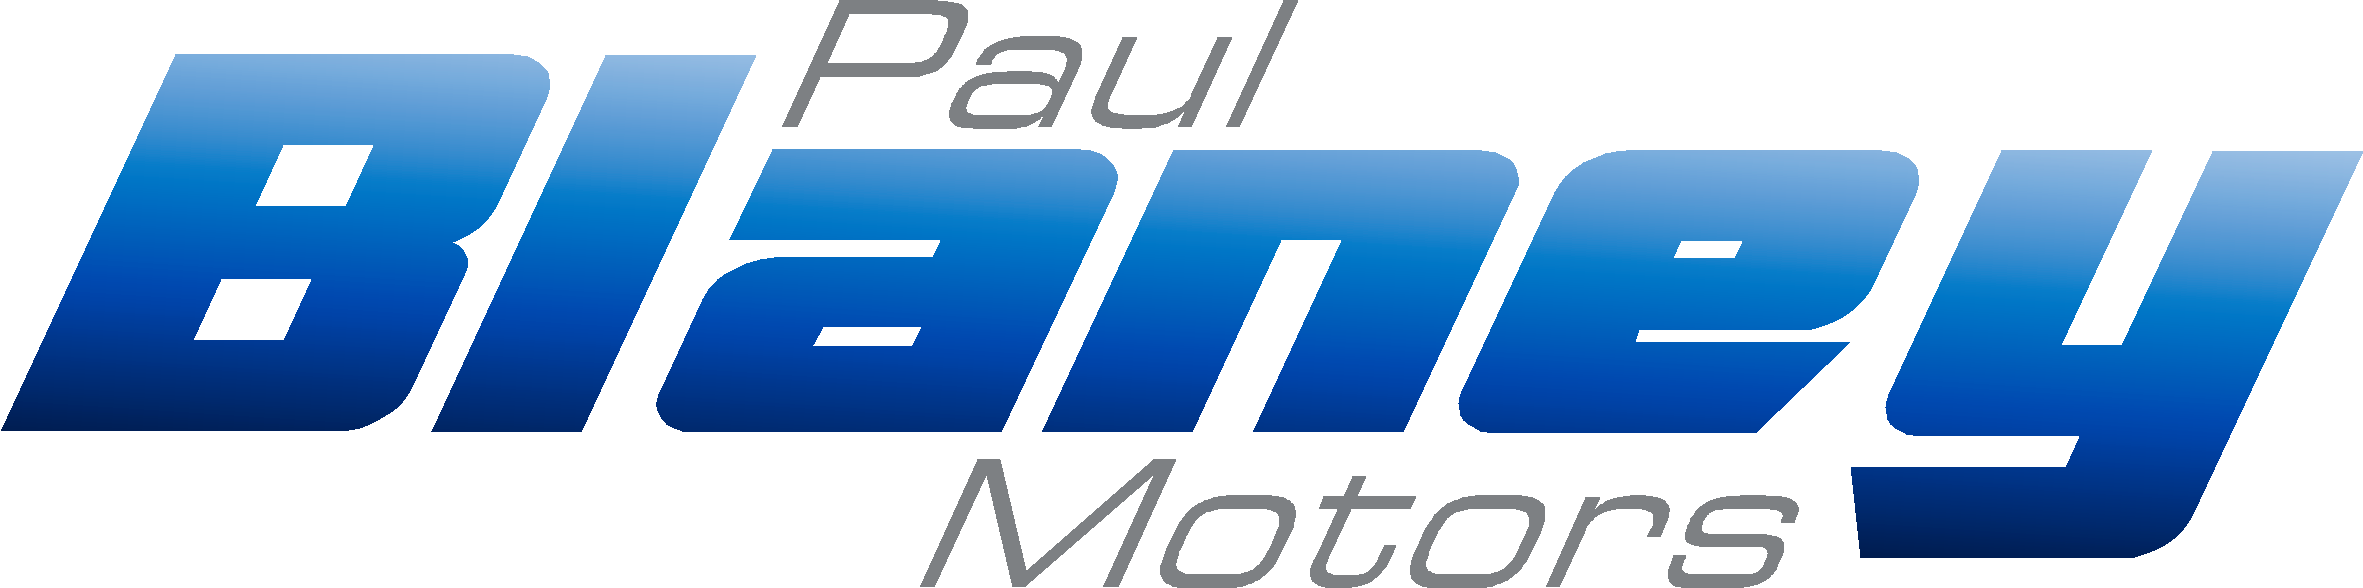 Paul Blaney Motors